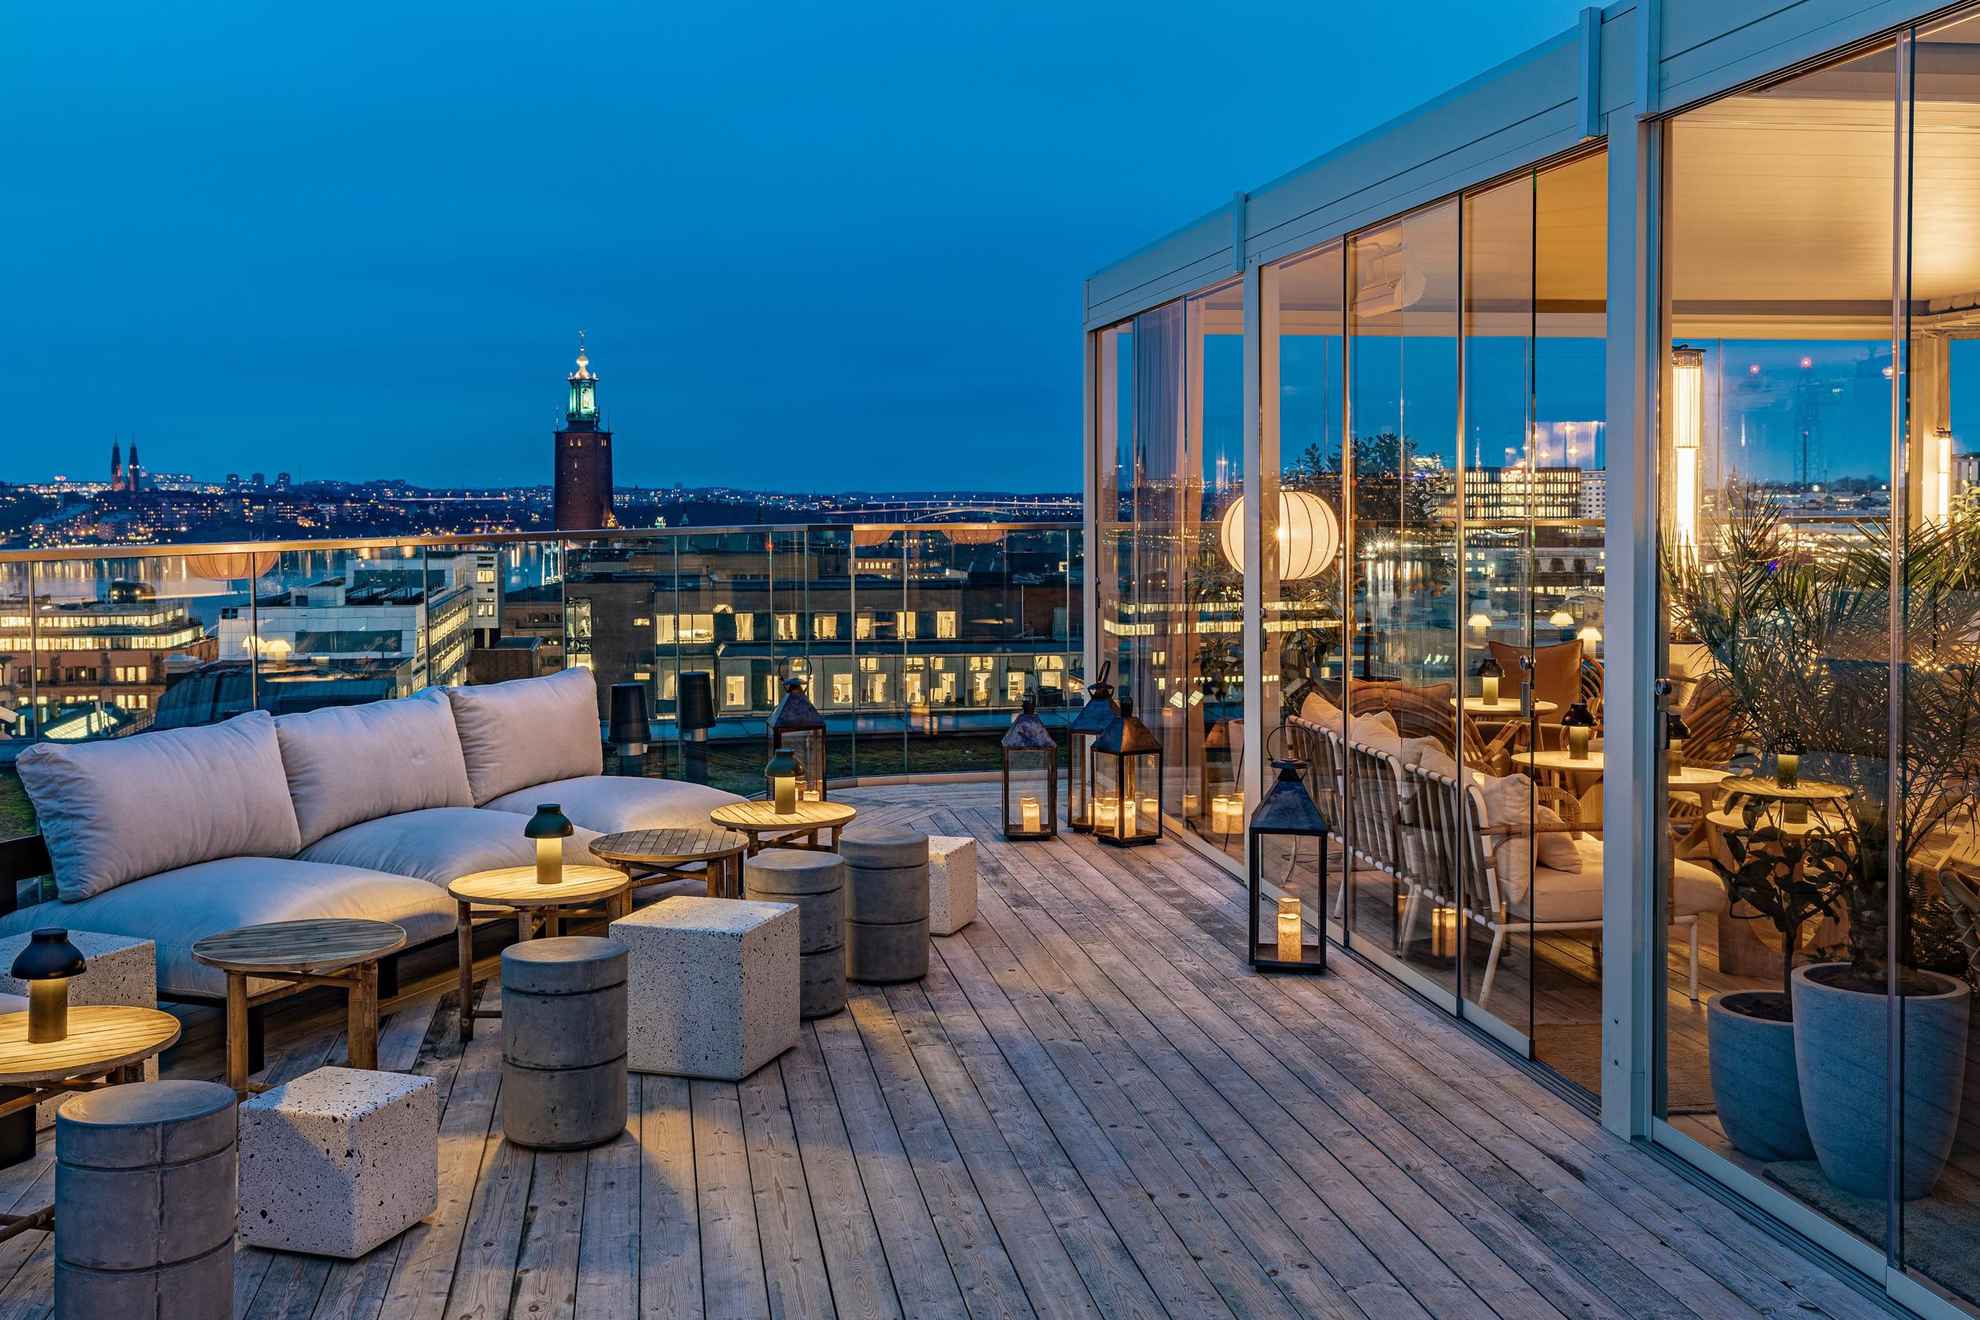 Een stijlvolle buitenbar op een dakterras met uitzicht over Stockholm en het stadhuis. Rechts zie je een gedeelte dat achter een glazen wand zit.